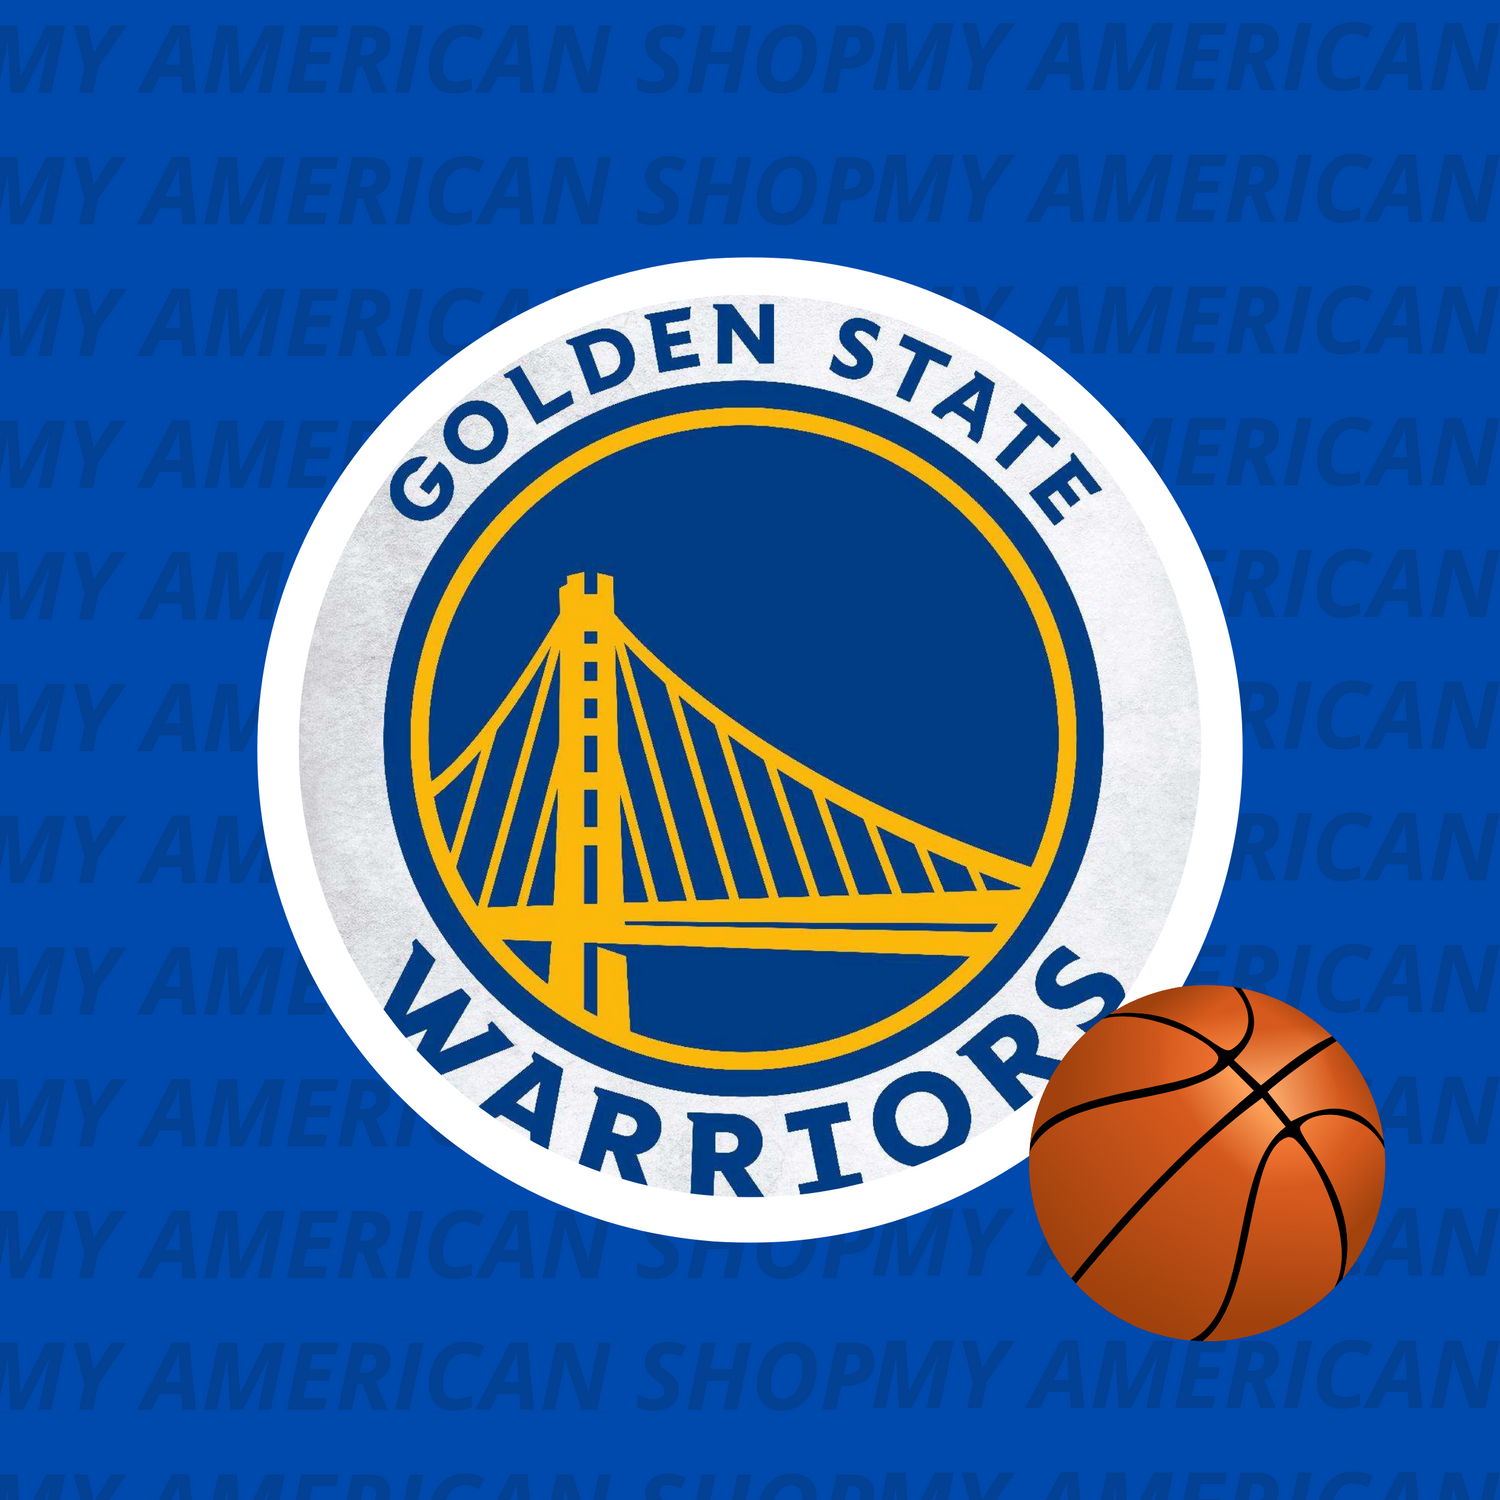 Les Golden States Warriors, une équipe au top de la NBA !